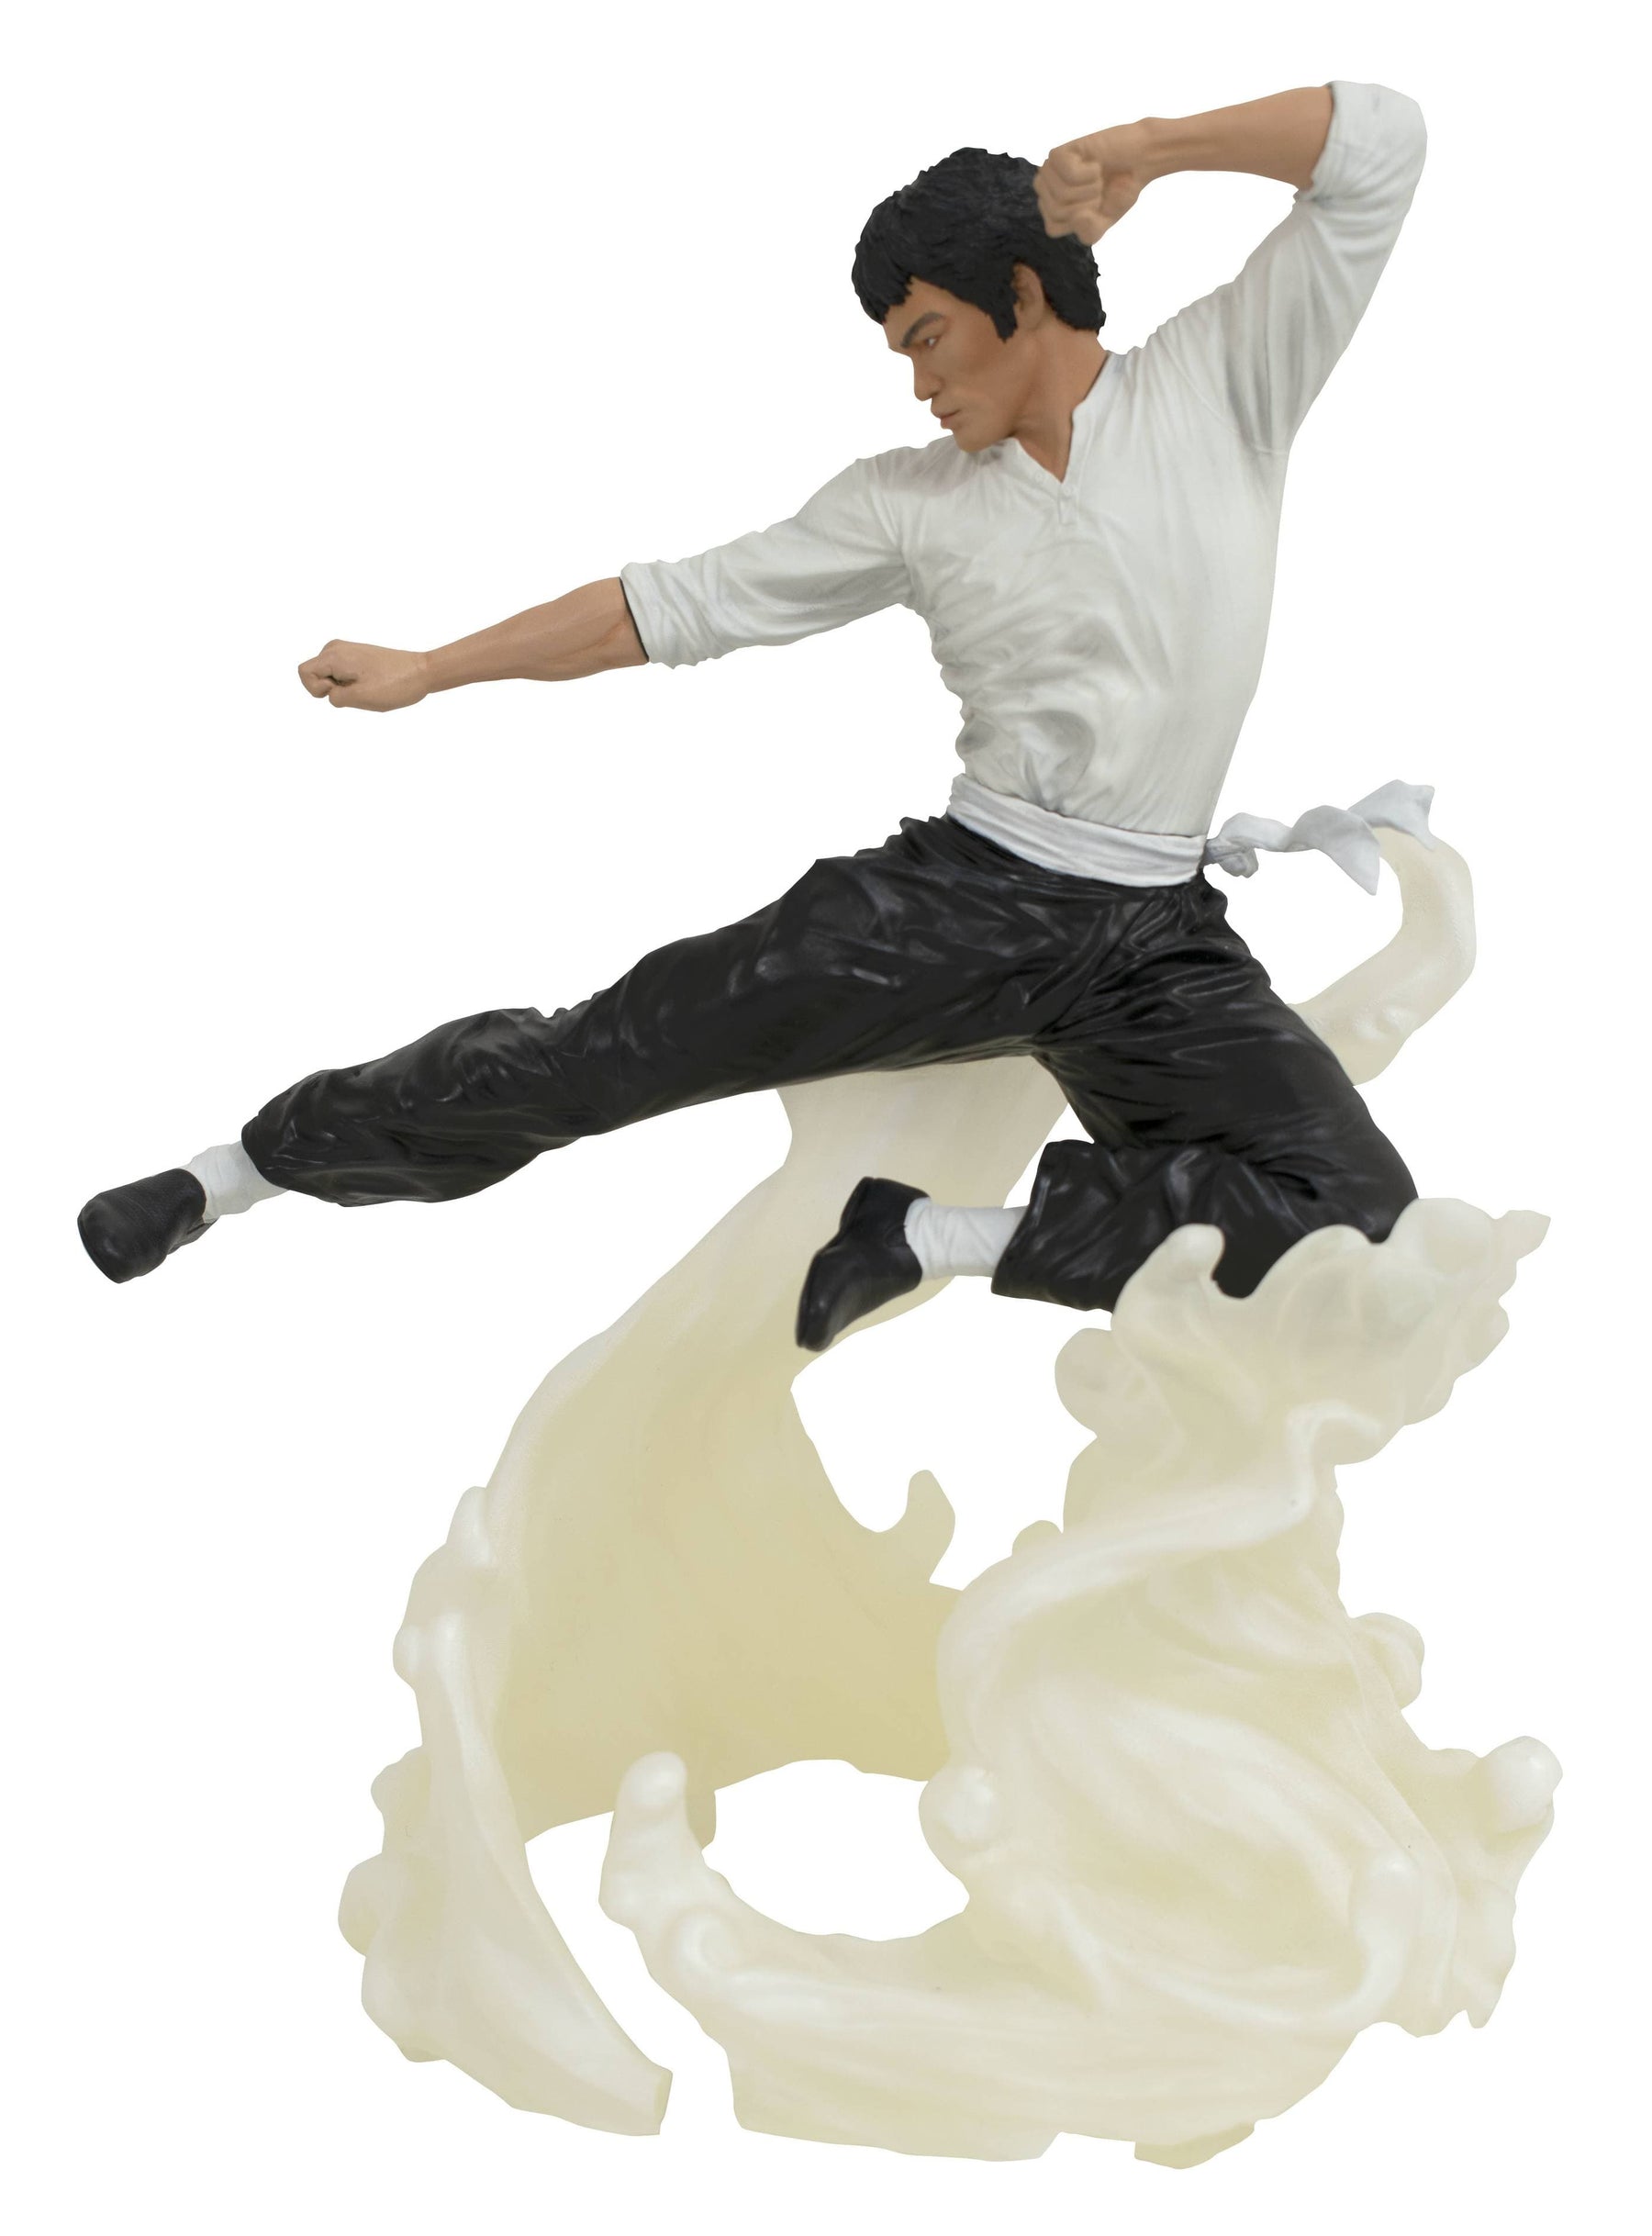 Gallery: Bruce Lee, "Air"